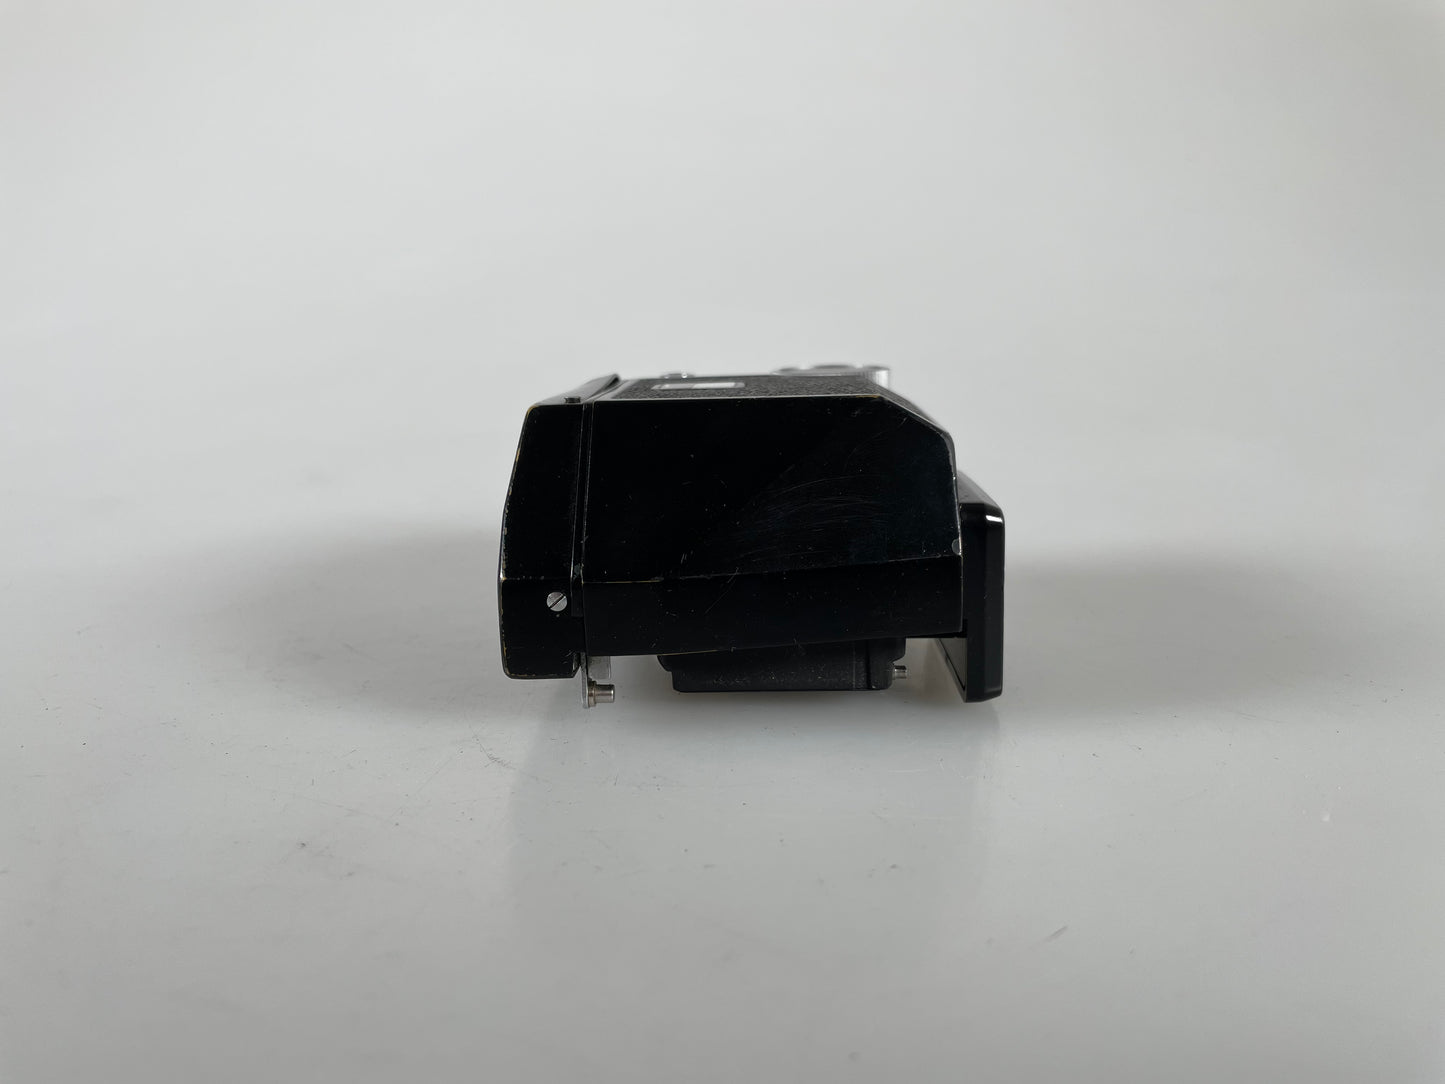 Nikon Black FTN meter prism finder for Nikon F camera